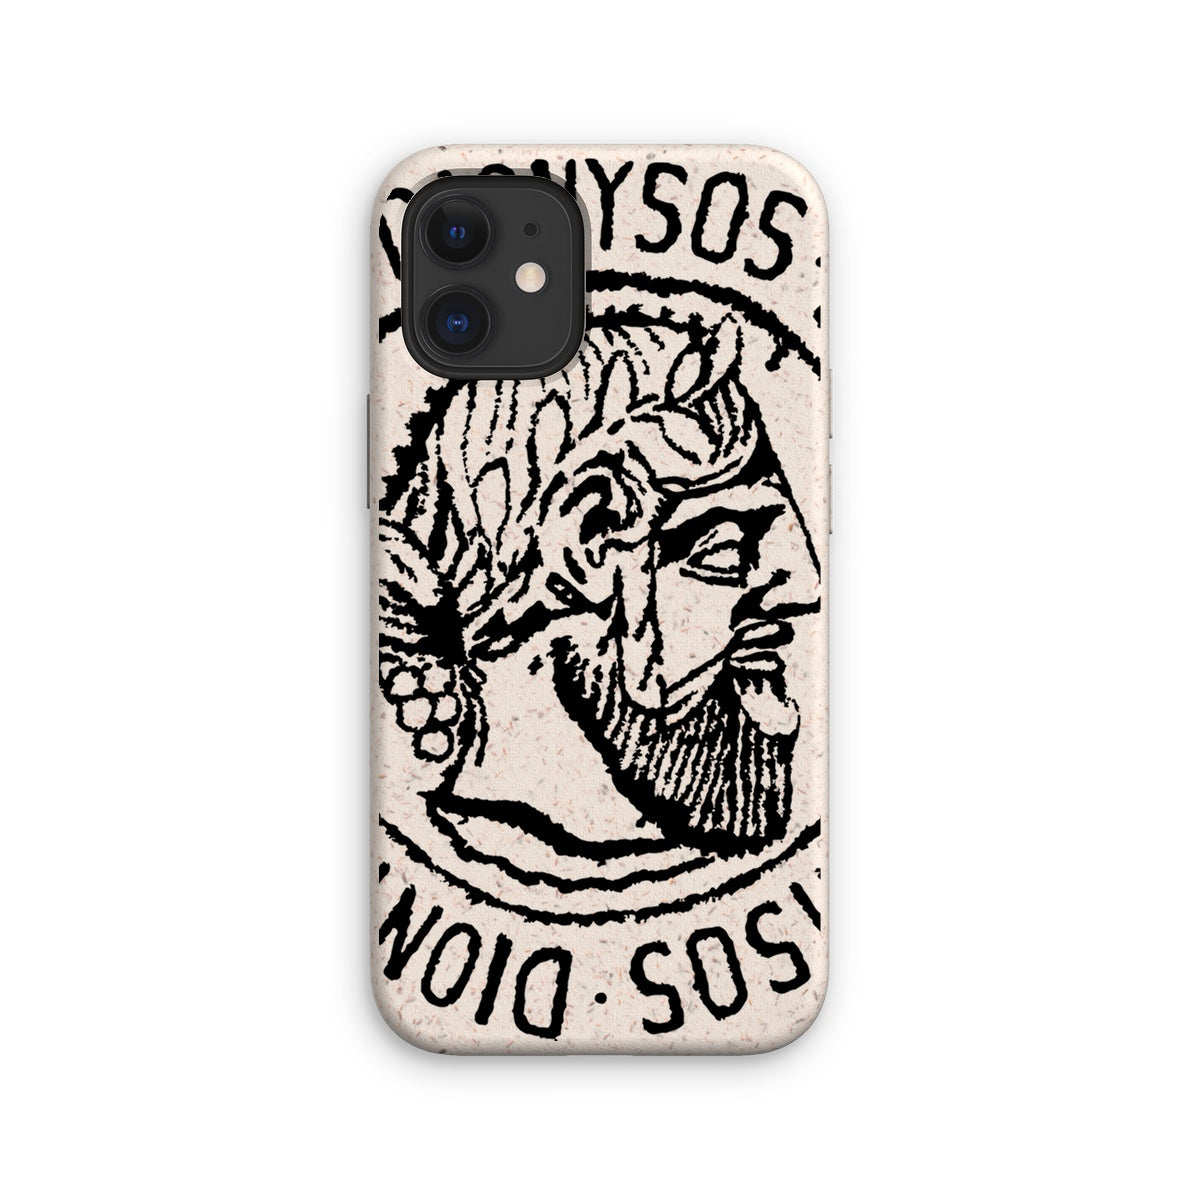 AQUA HMP2 - 02 - Dionysos - Eco Phone Case